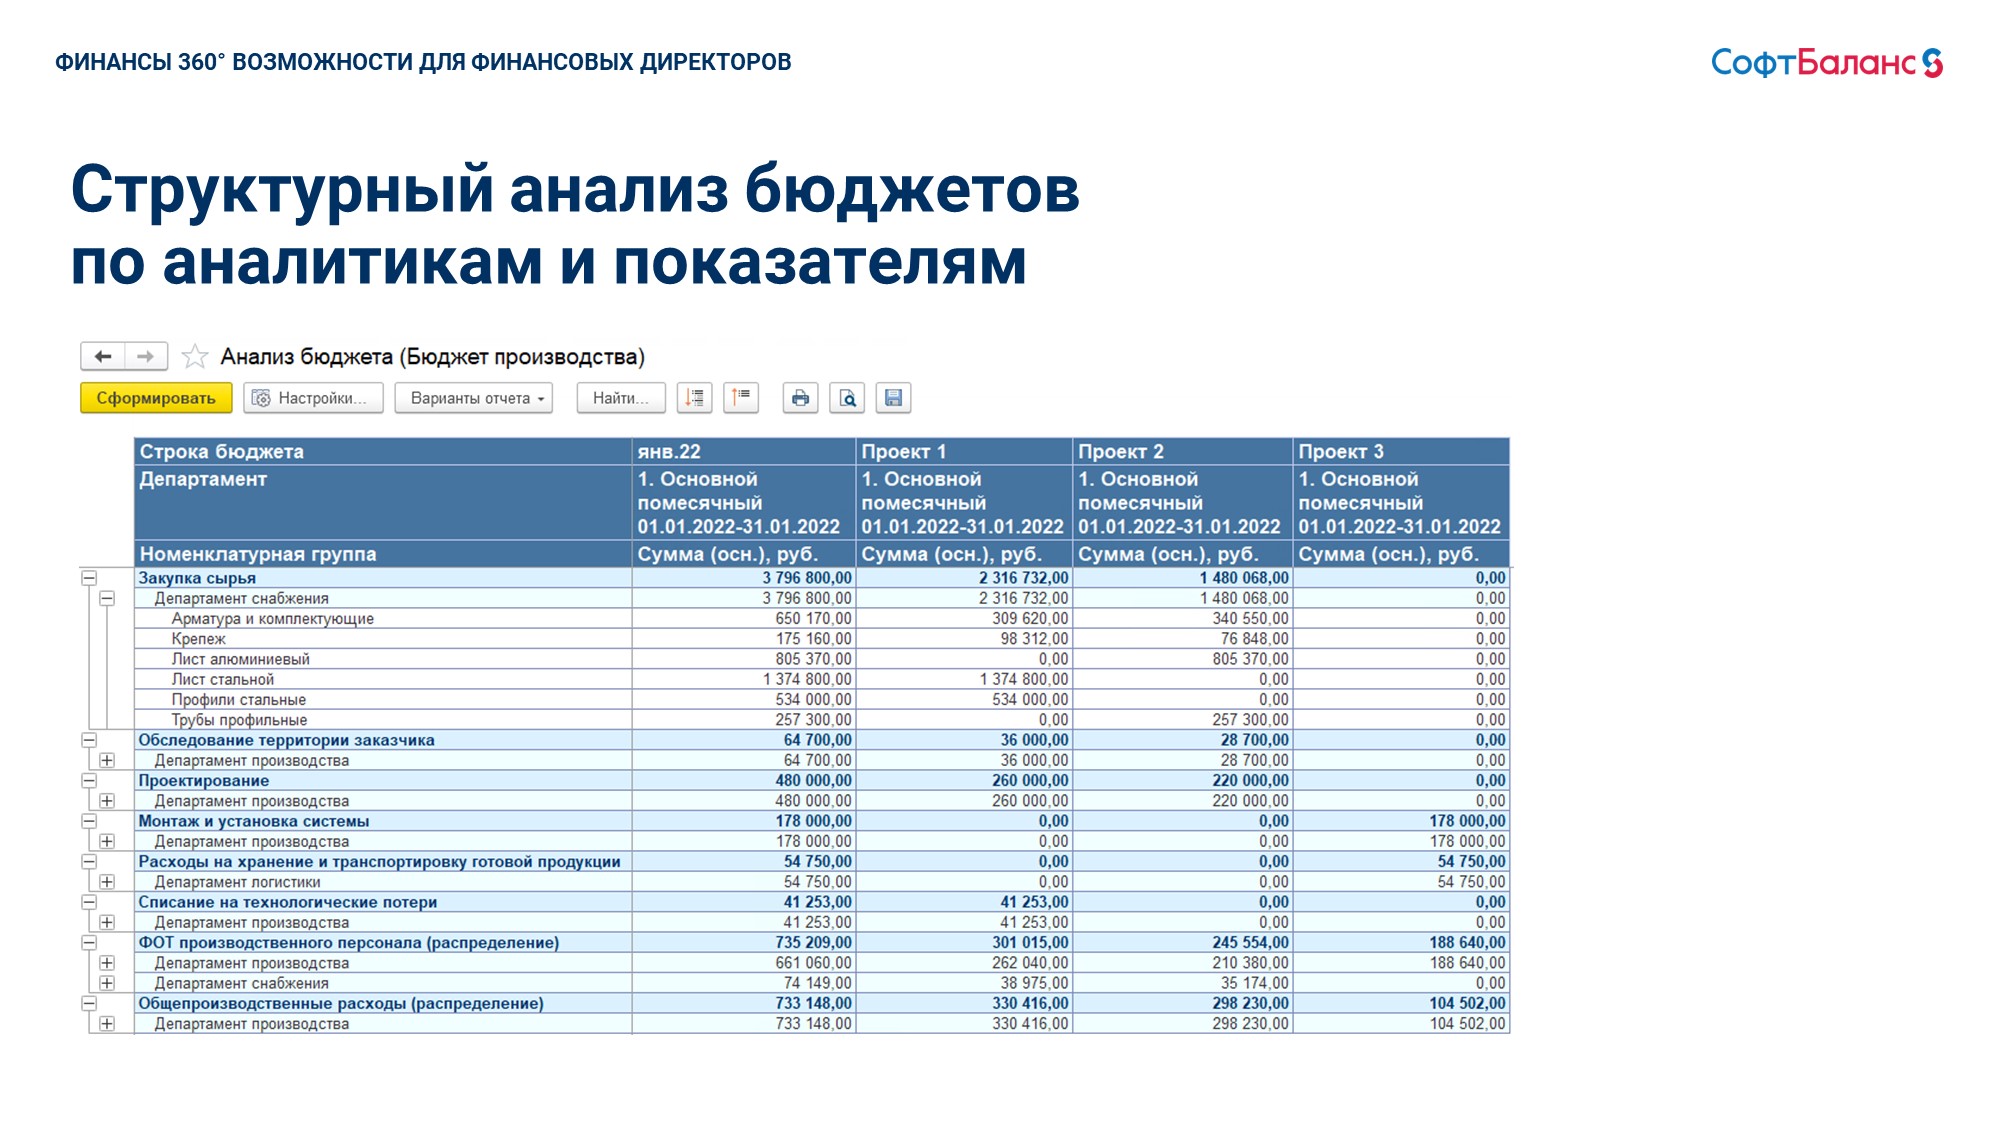 Анализ бюджетов. Слайд 1